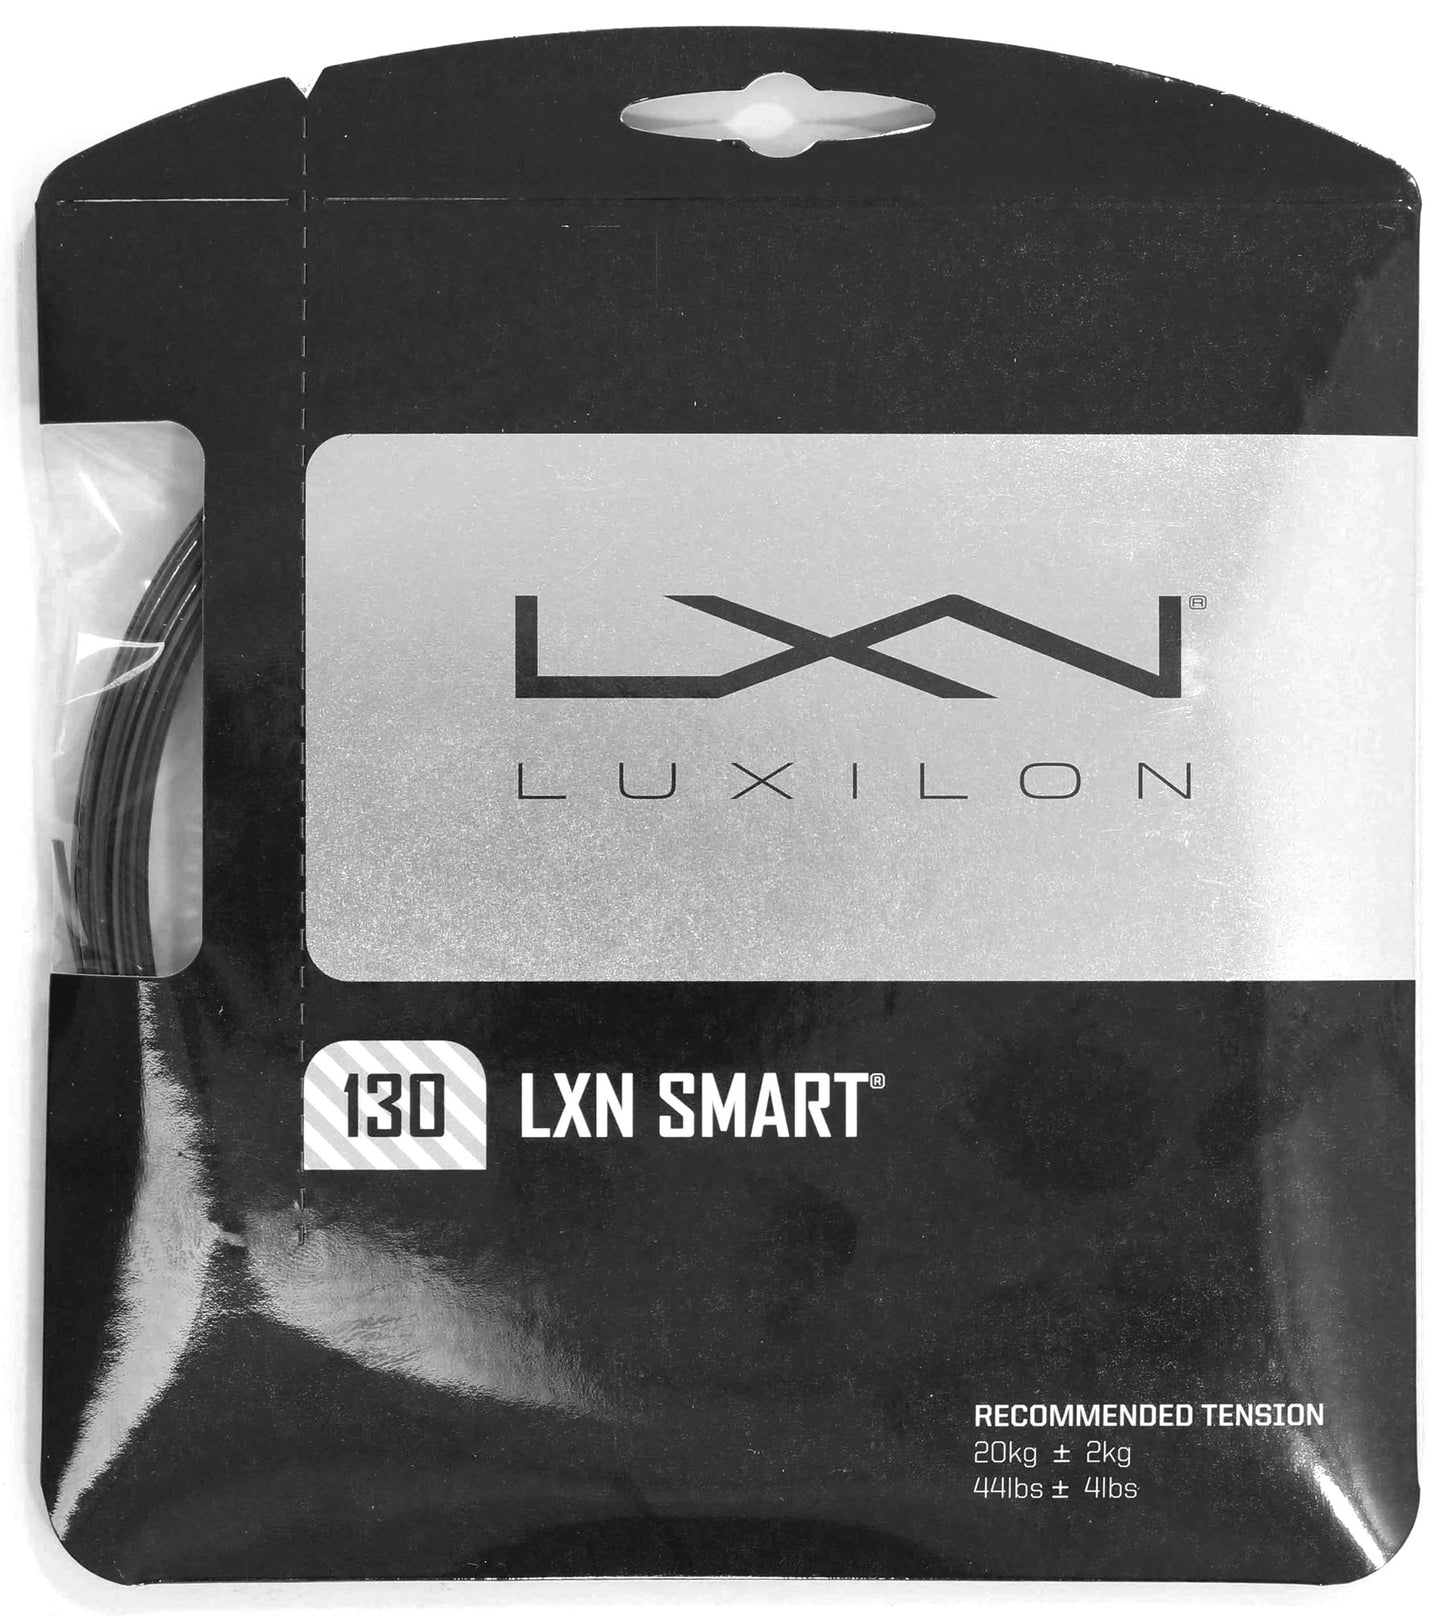 Luxilon Smart 130 Black/White